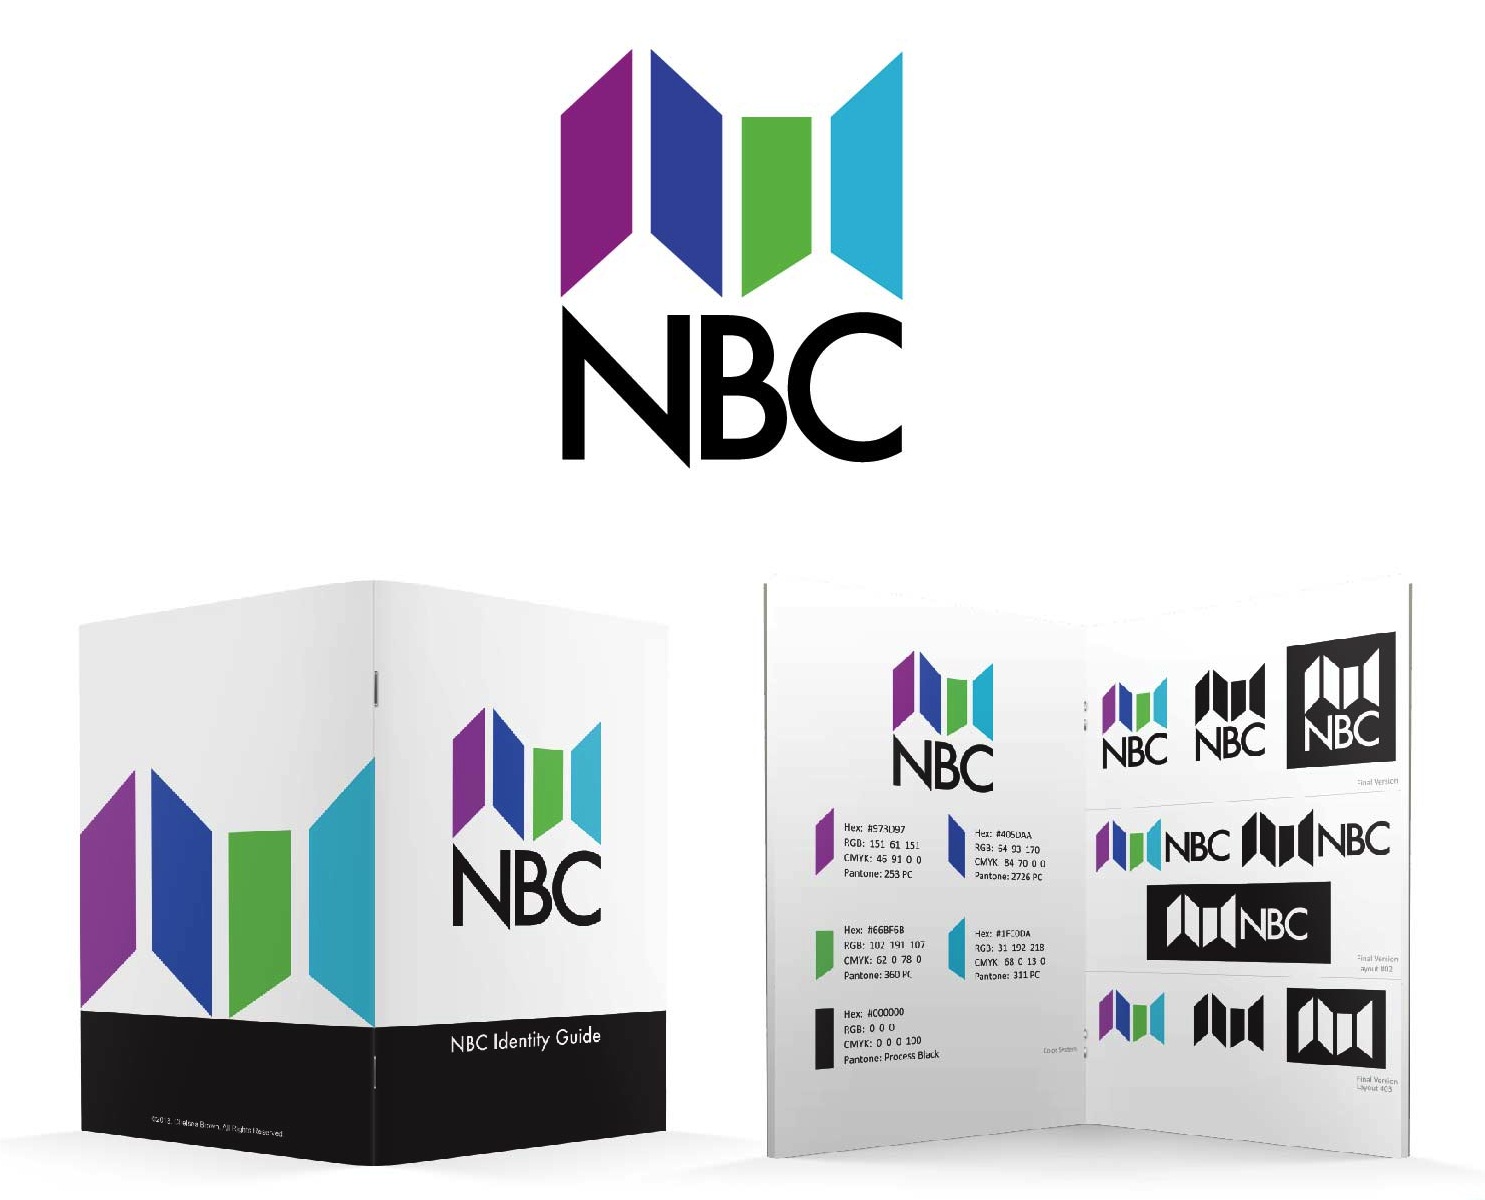 NBC Identity Guide